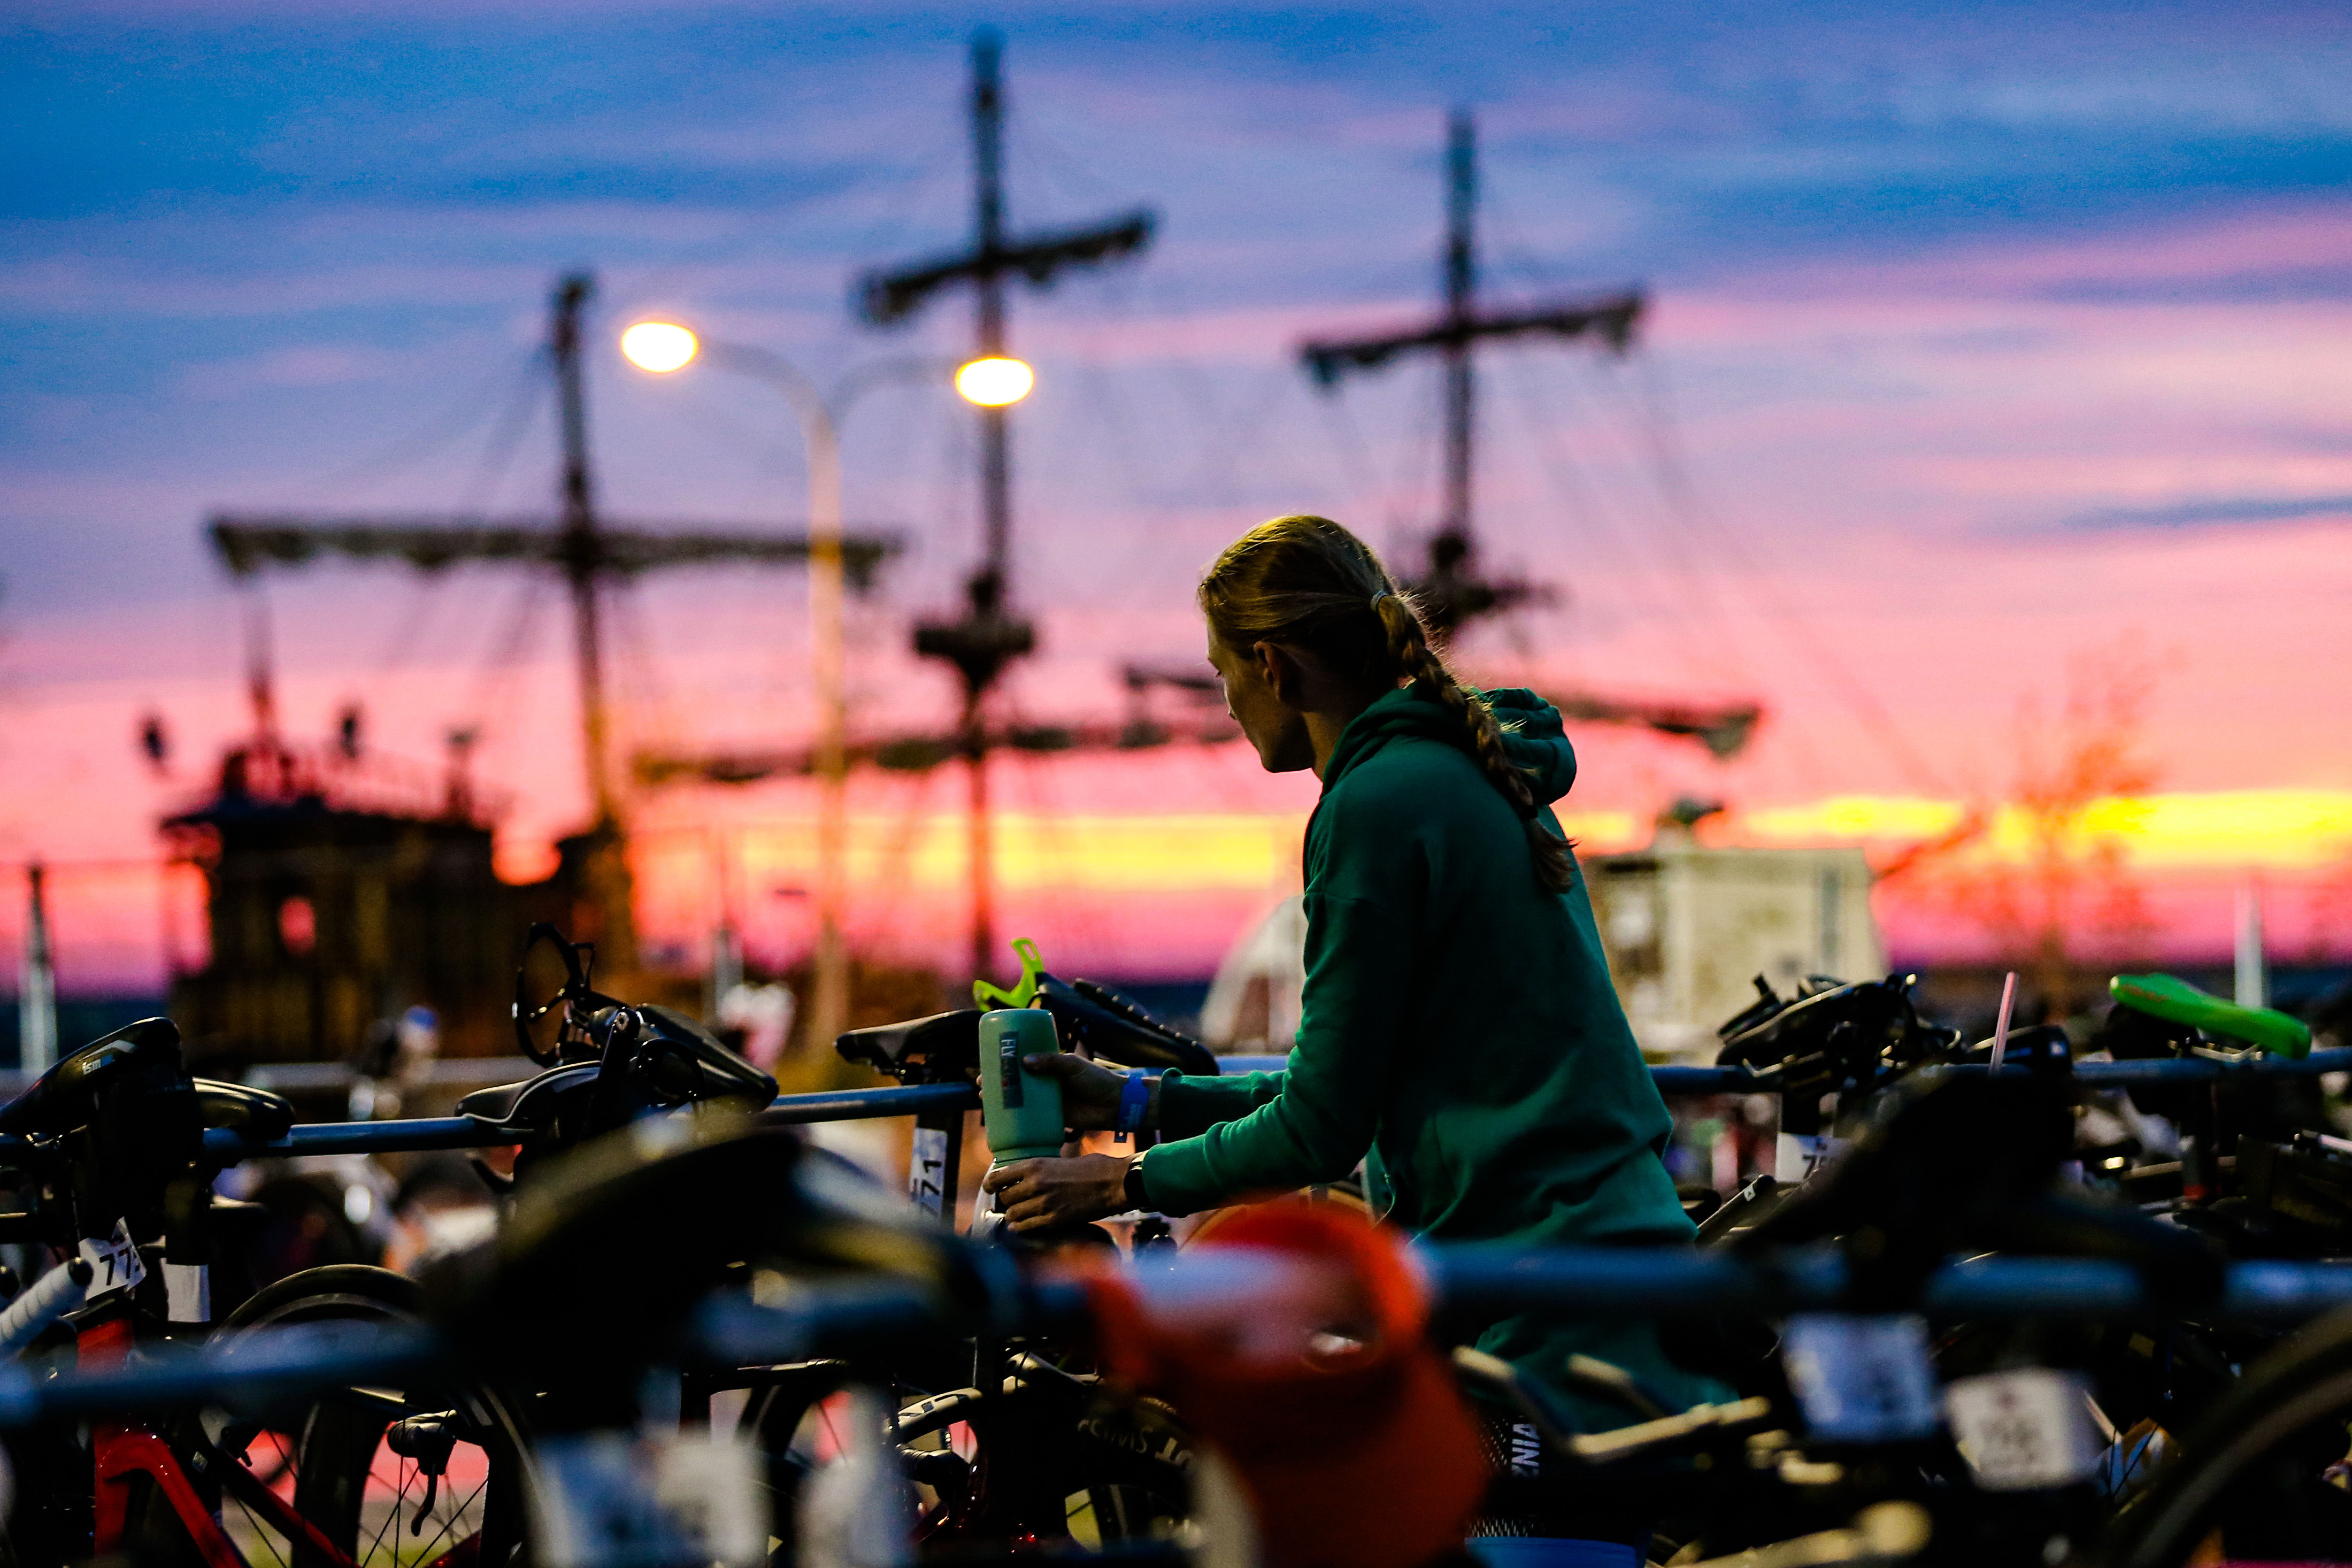 zawodniczka o wschodzie słońca z rowerem w strefie zmian - w tle żagle żaglowca